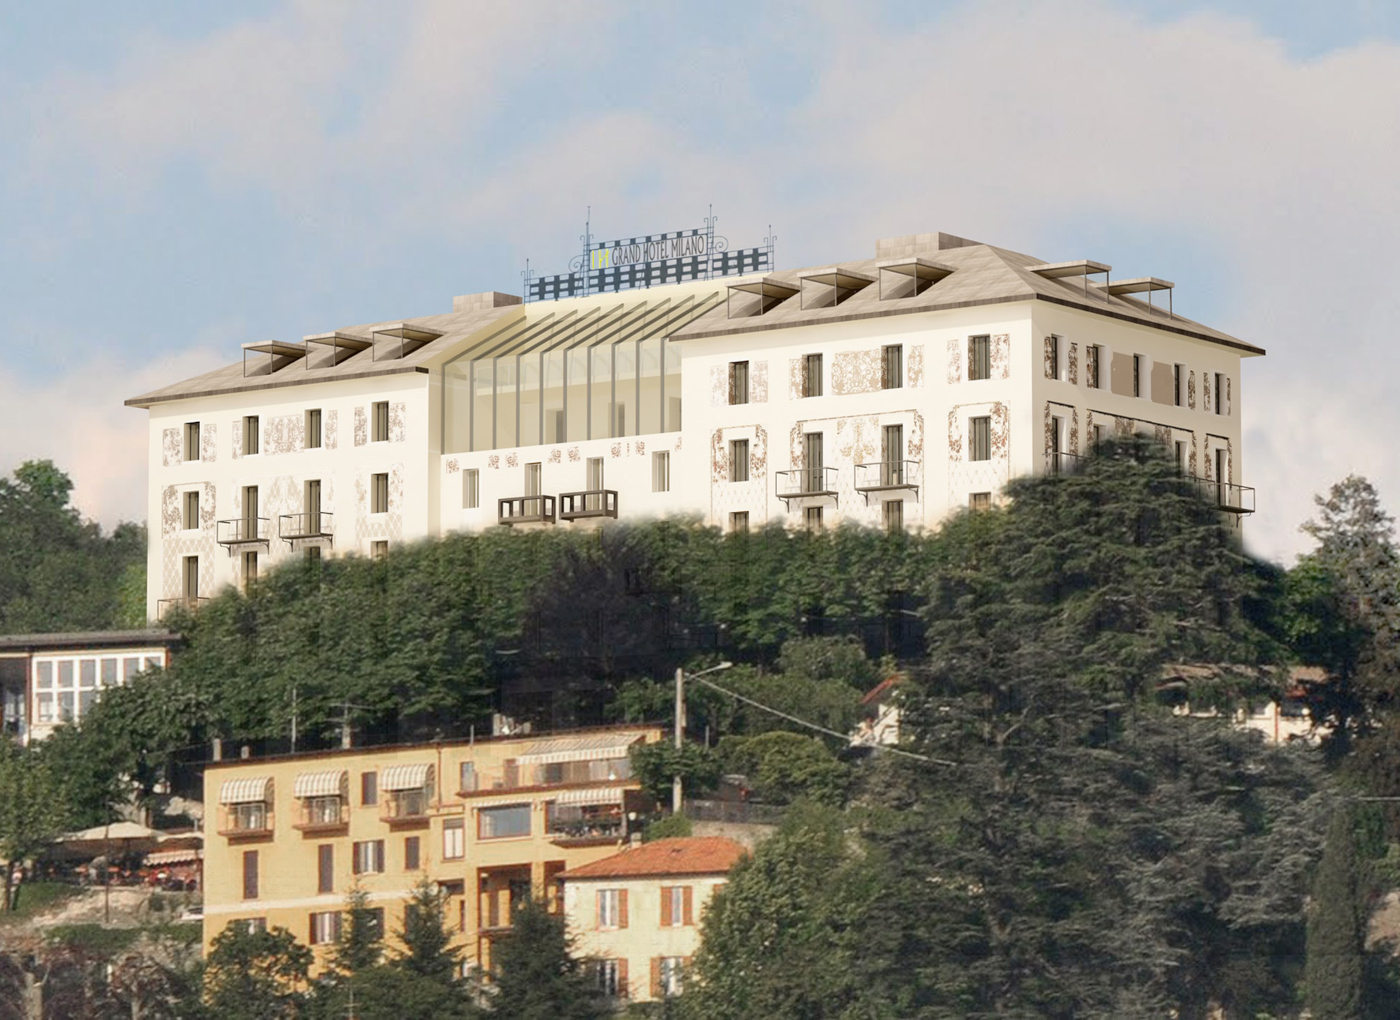 Consolidamento e rinforzo leggero dei solai al Grand Hotel Milano sul Lago di Como.